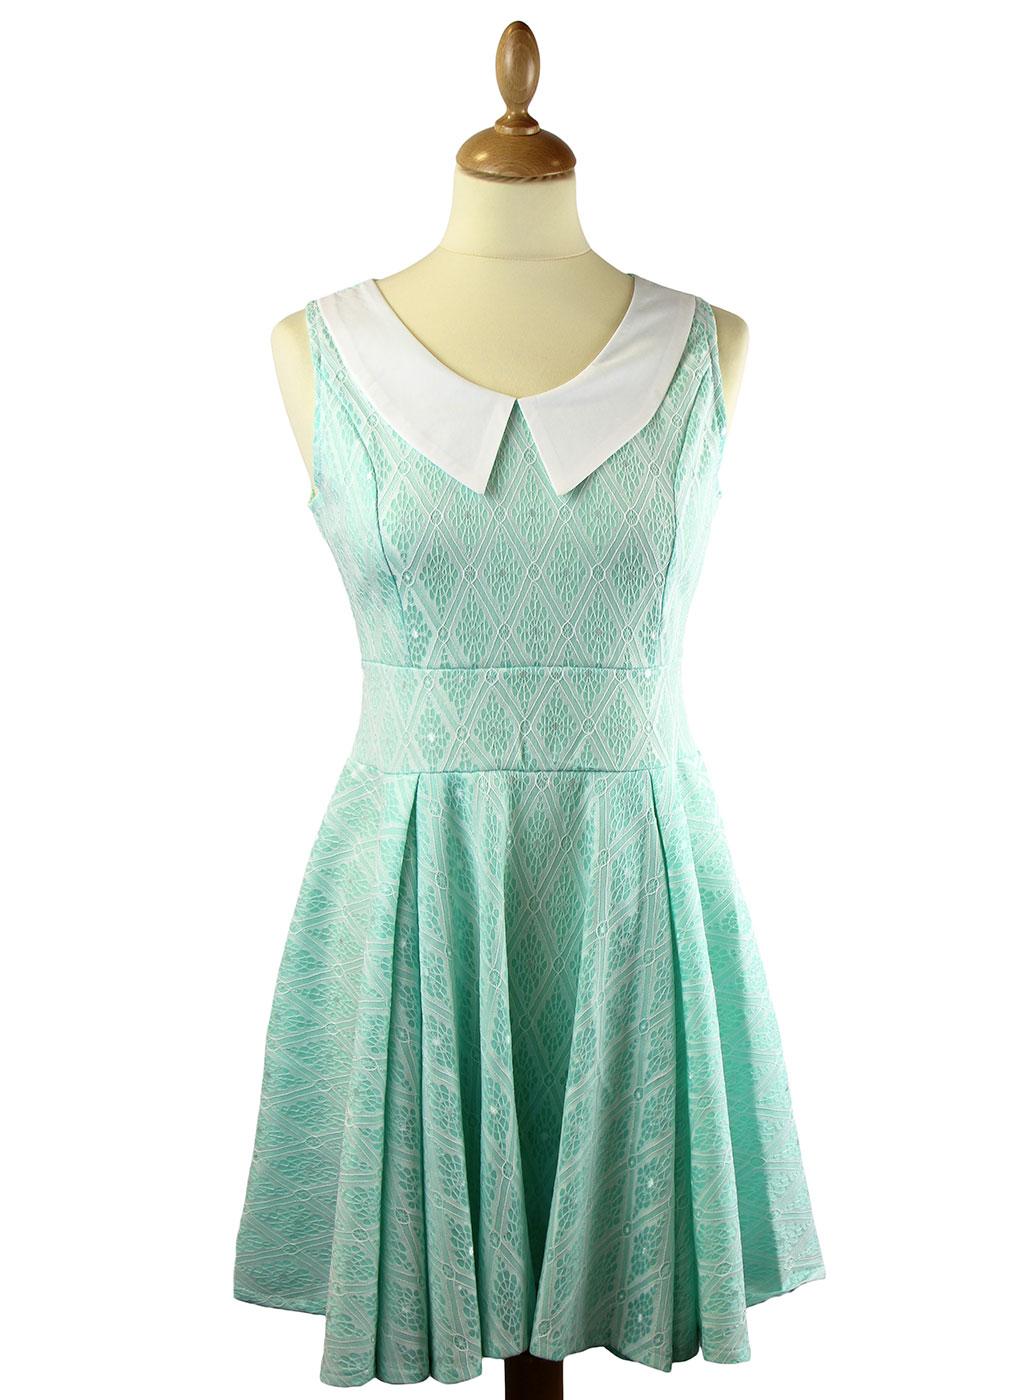 Kimberly LOVESTRUCK 60s Mod Lace Overlay Dress M